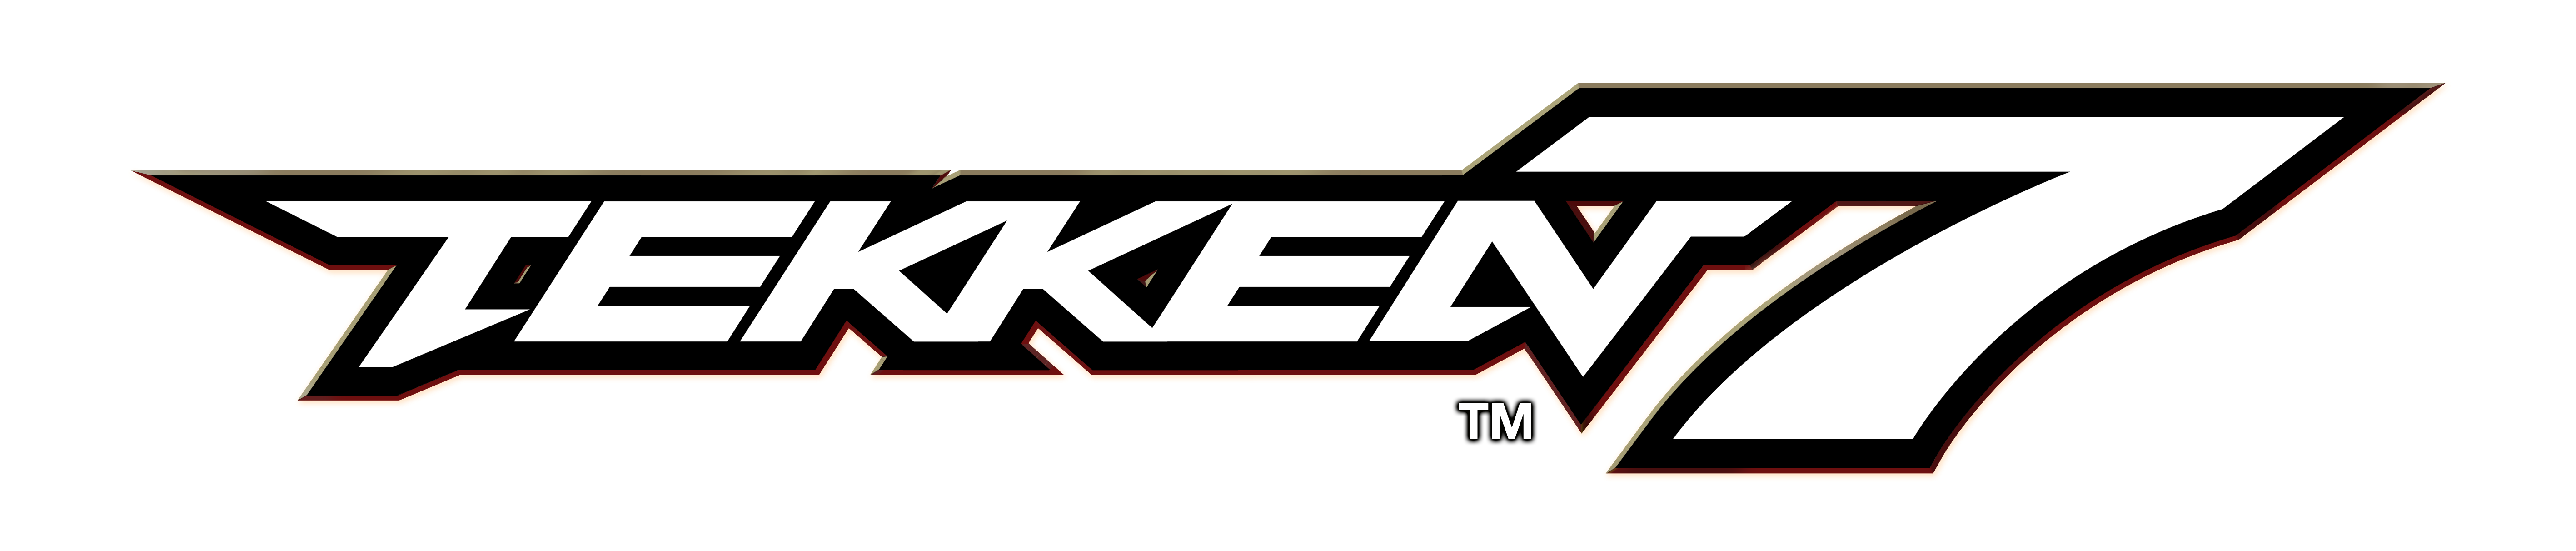 Tekken Logo Background PNG Image